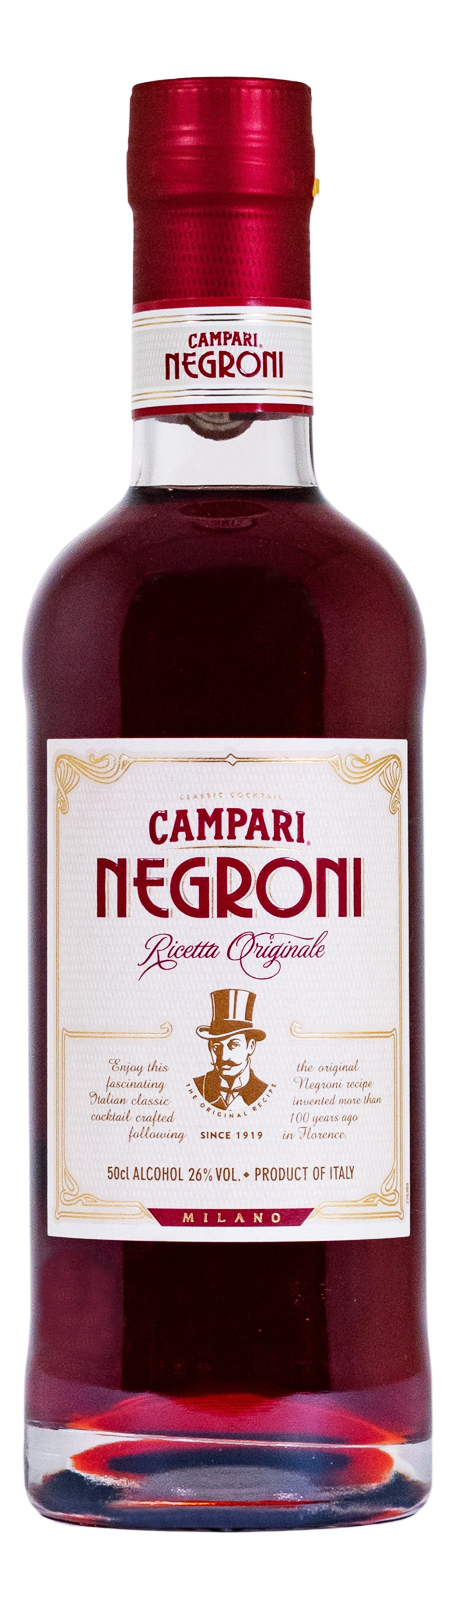 Campari Negroni - 0,5L 26% vol